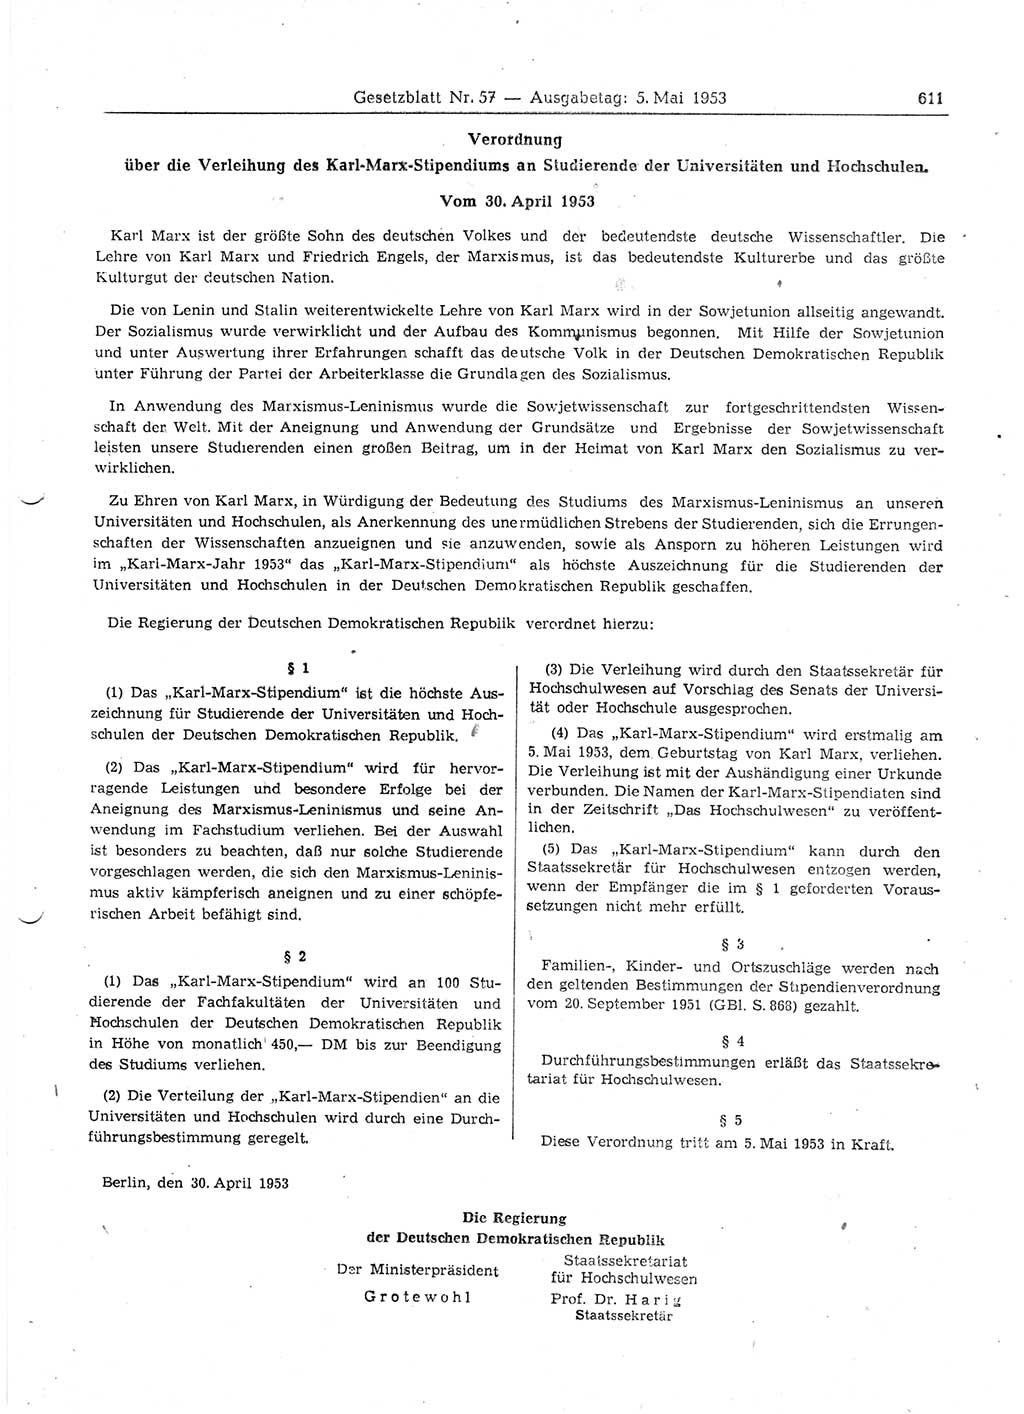 Gesetzblatt (GBl.) der Deutschen Demokratischen Republik (DDR) 1953, Seite 611 (GBl. DDR 1953, S. 611)